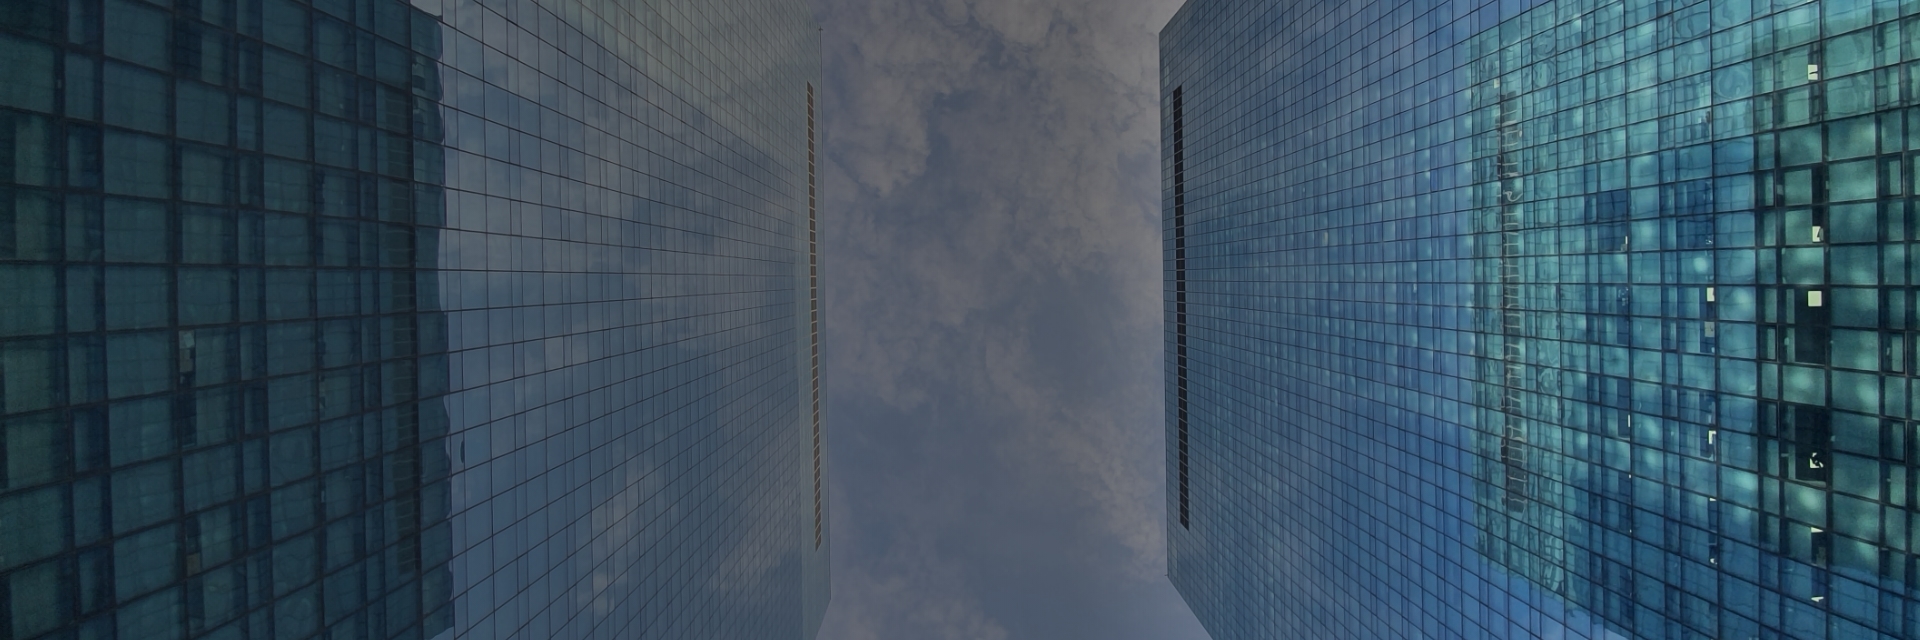 반사되는 유리 외벽이 있는 높은 사무실 빌딩 사이로 아래에서 하늘을 올려다보는 사진.